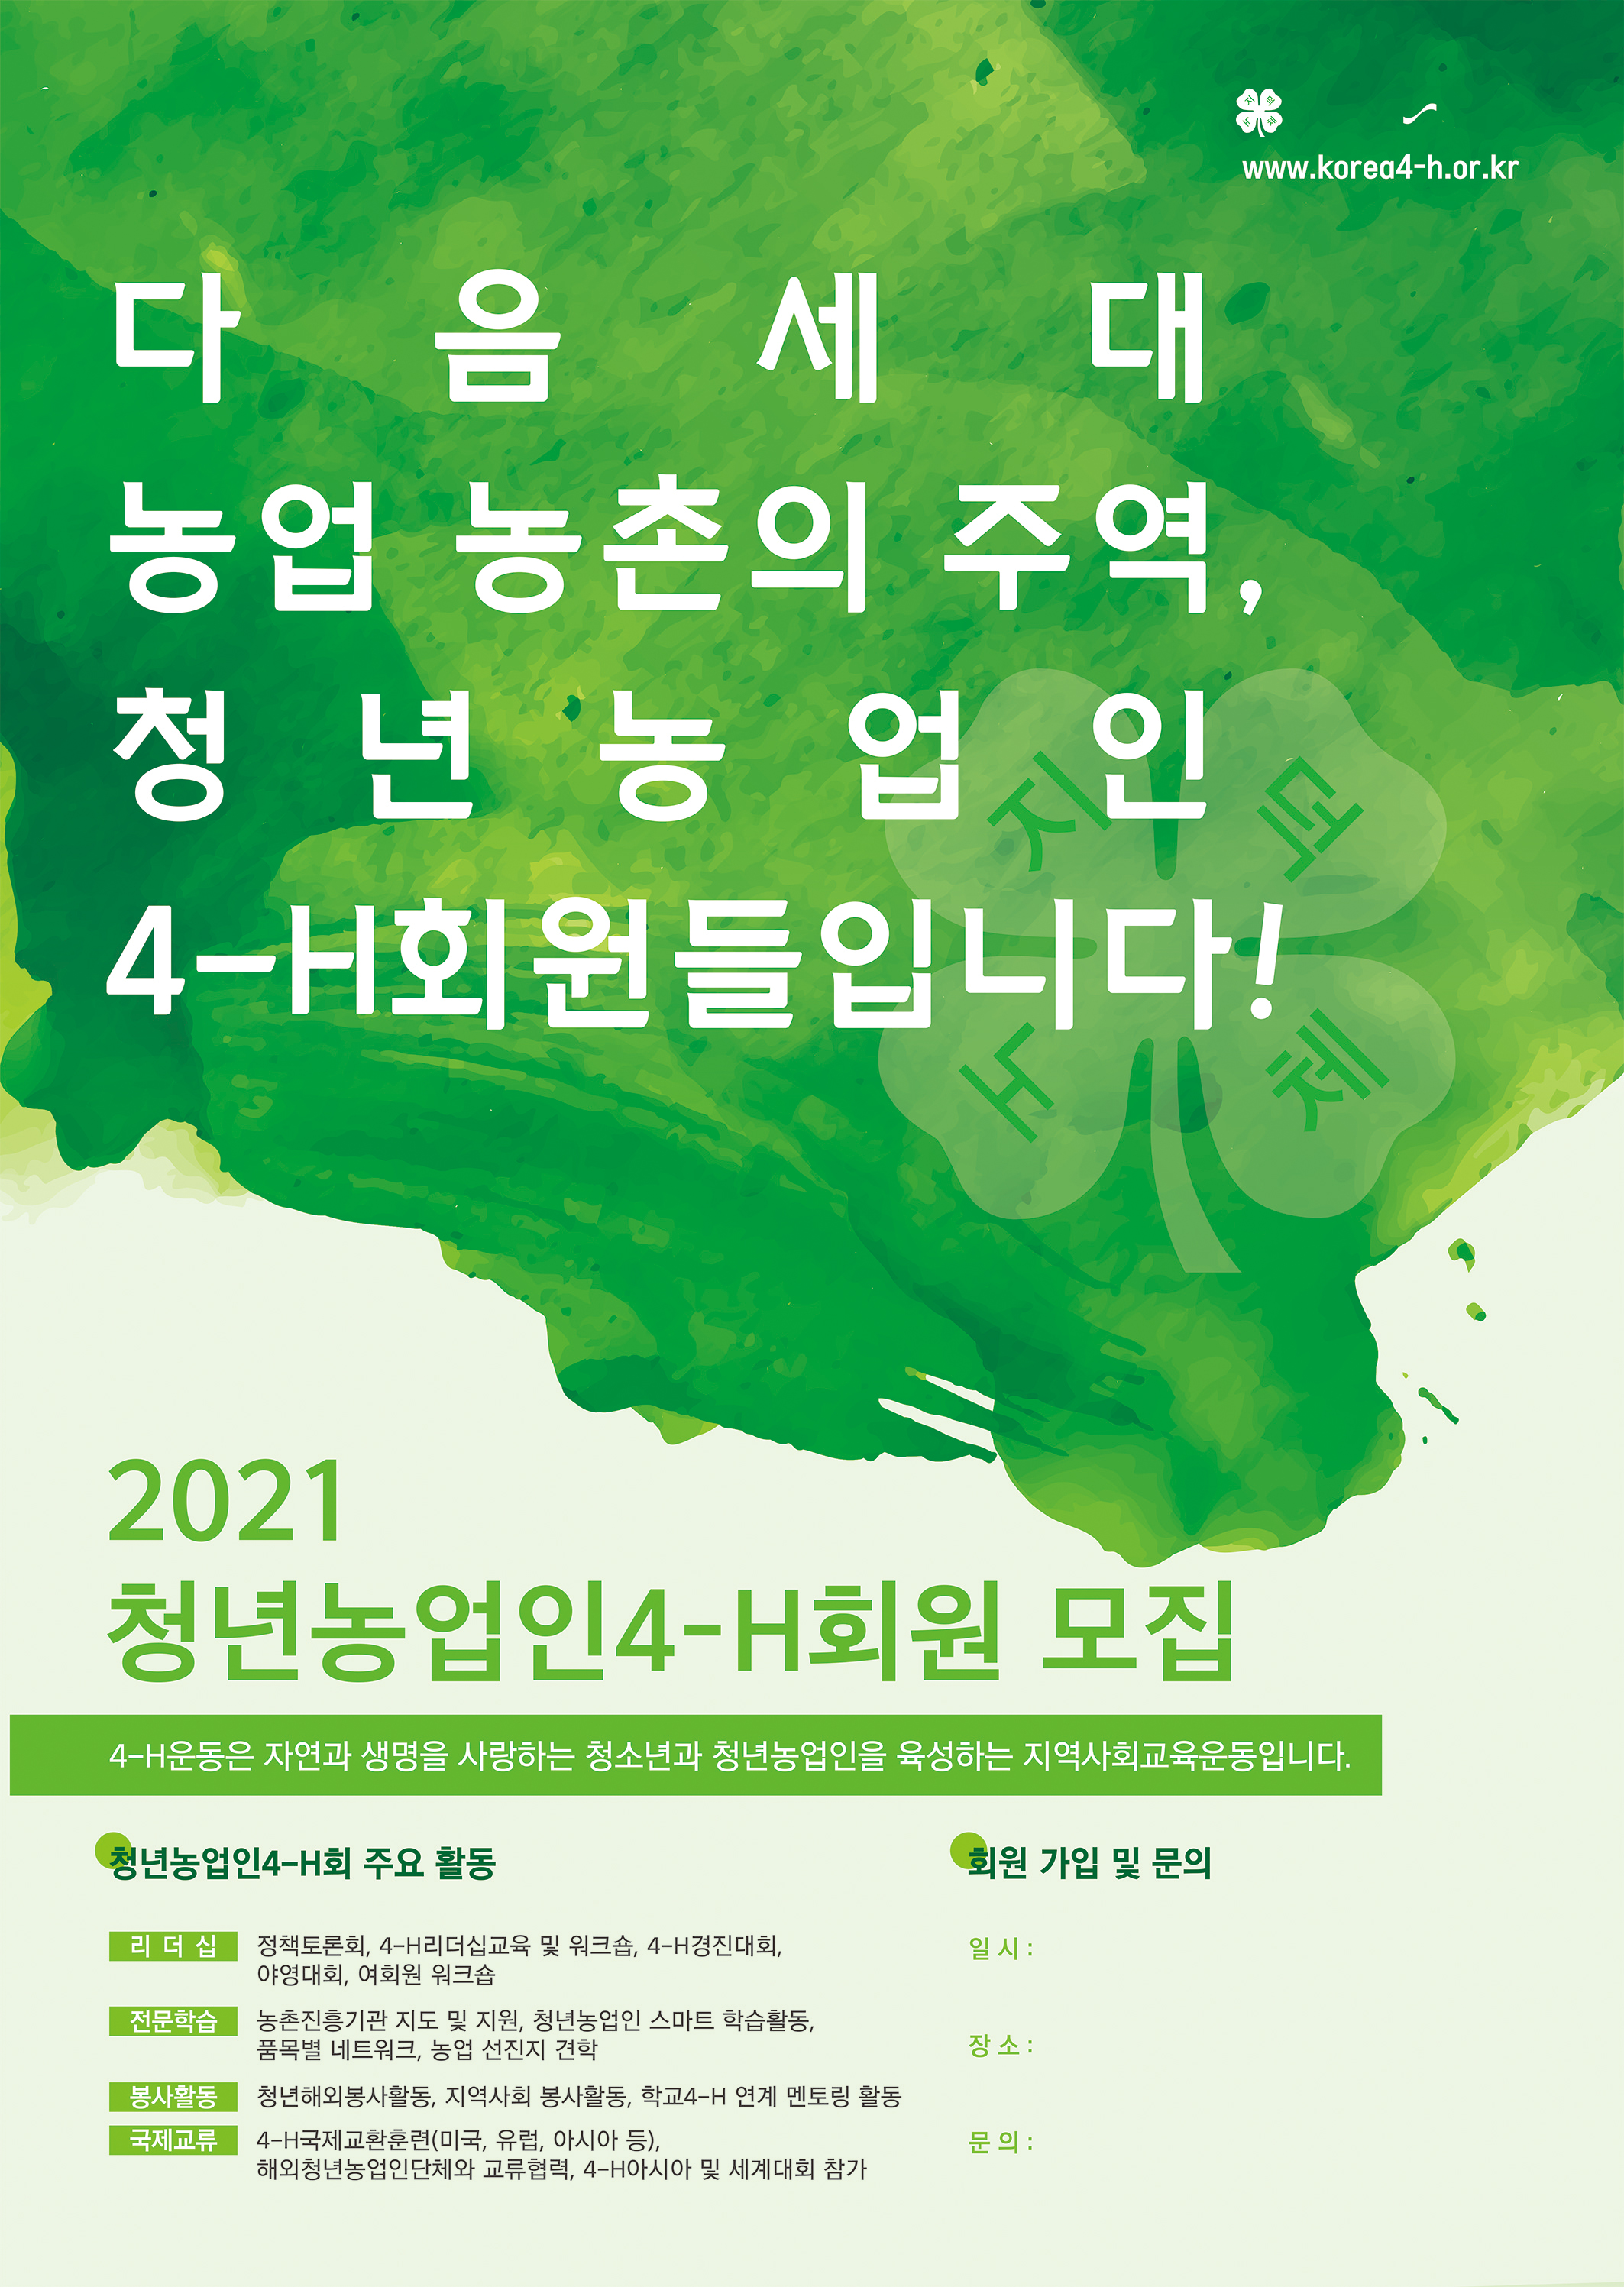 2021년도 신규4-H회원 모집 홍보 알림